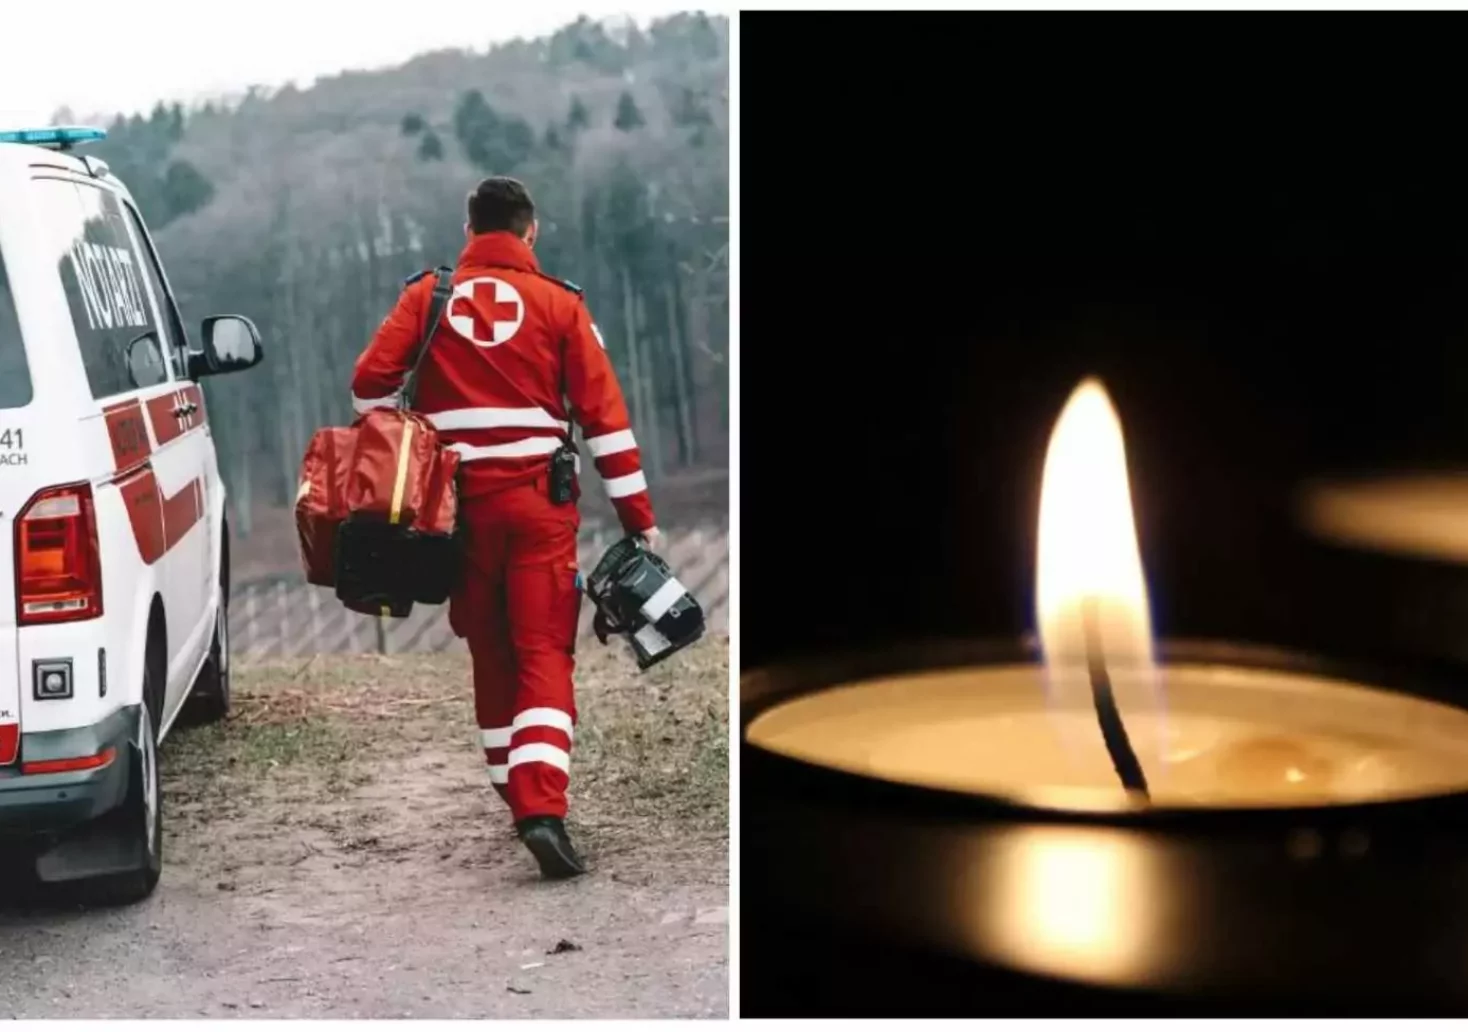 Foto in Beitrag von 5min.at: Zu sehen ist ein Rettungssanitäter, der in Richtung Rettungsauto geht und Kerzen, weil jemand verstorben ist.